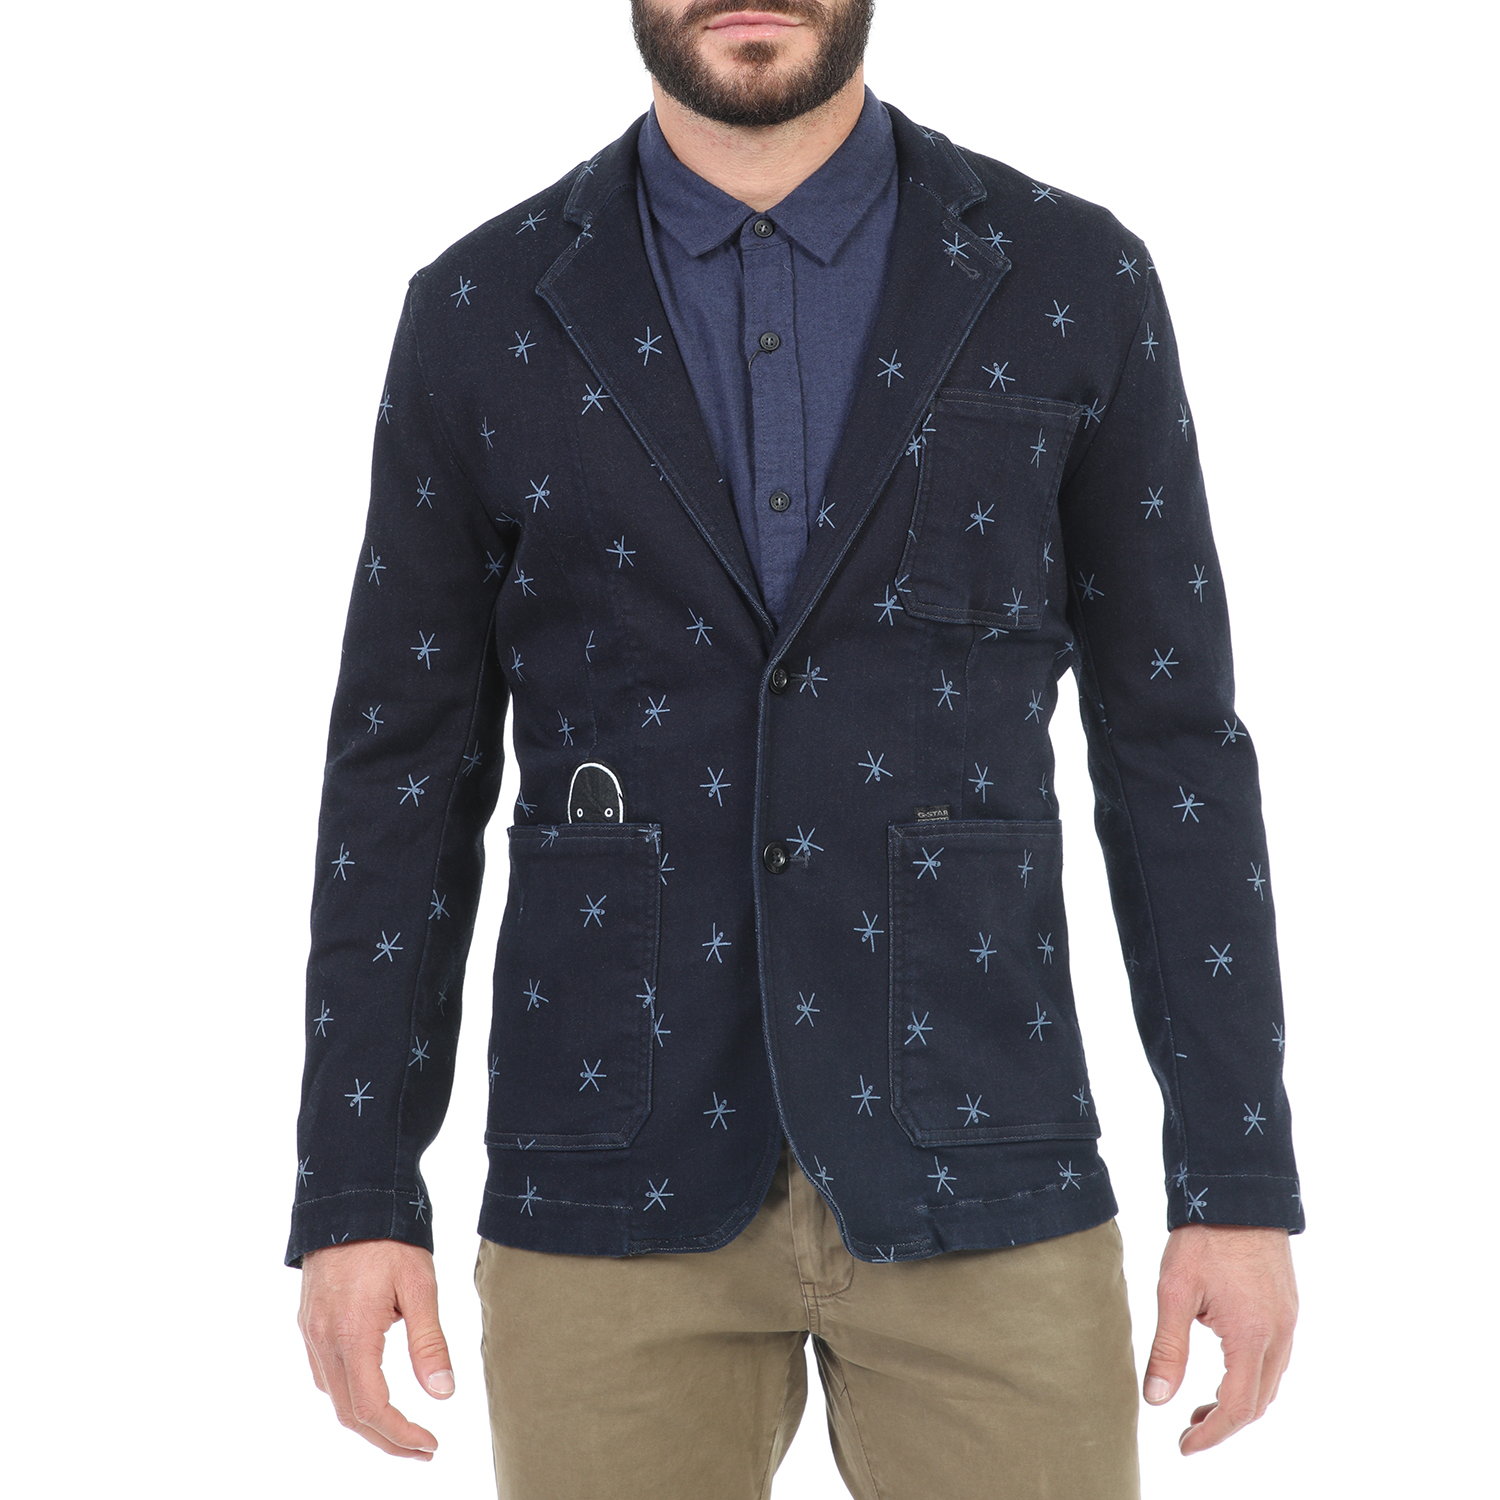 Ανδρικά/Ρούχα/Πανωφόρια/Σακάκια G-STAR RAW - Ανδρικό σακάκι blazer G-STAR RAW OCCATIS μπλε